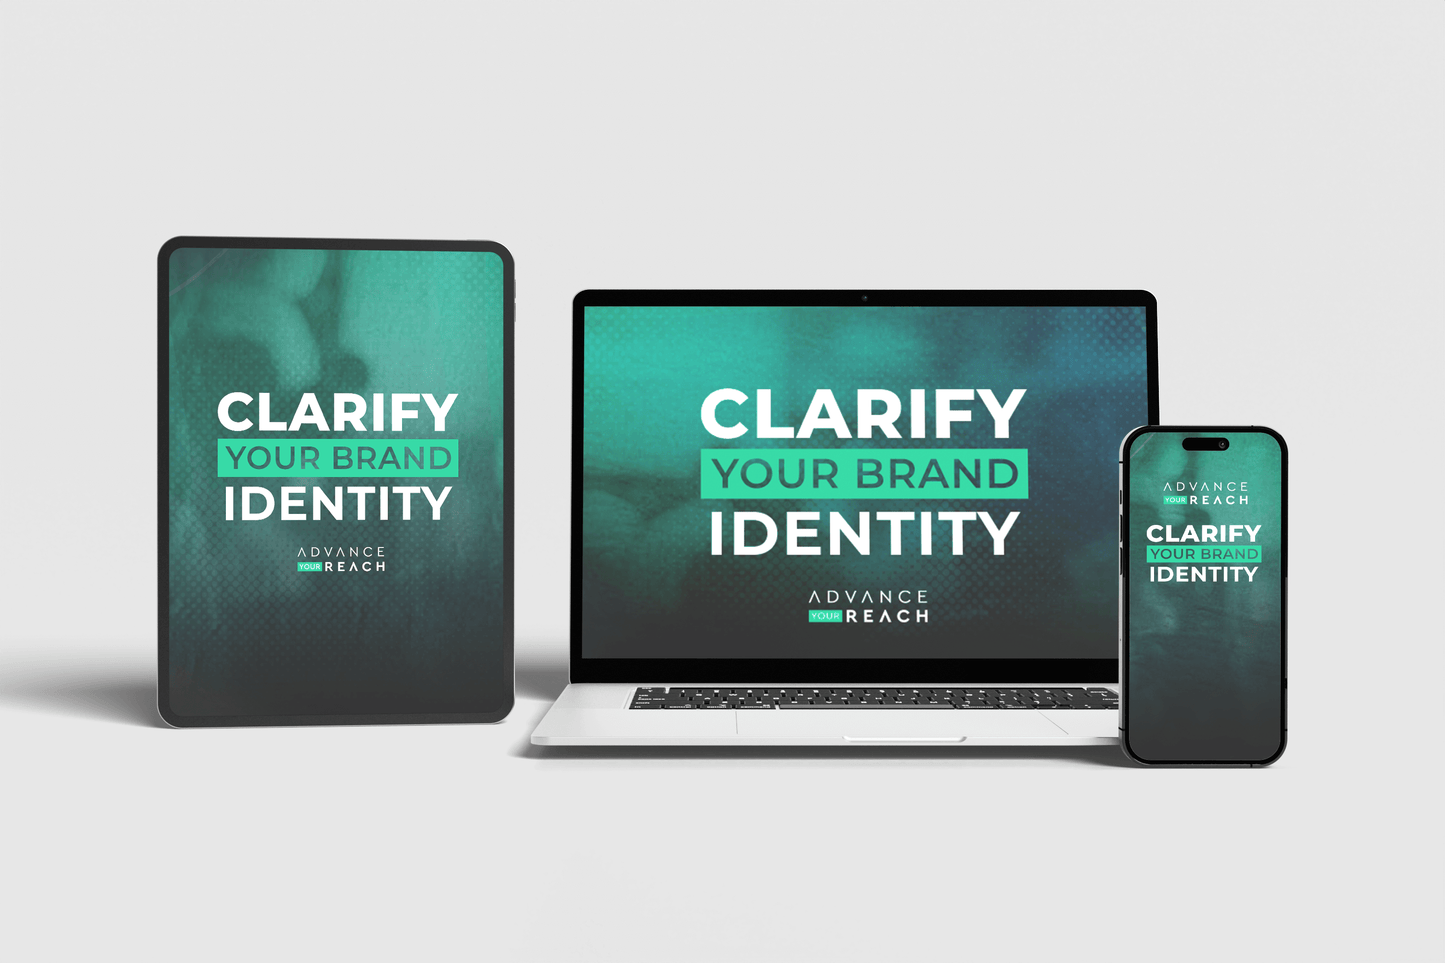 Clarify Your Brand Identity